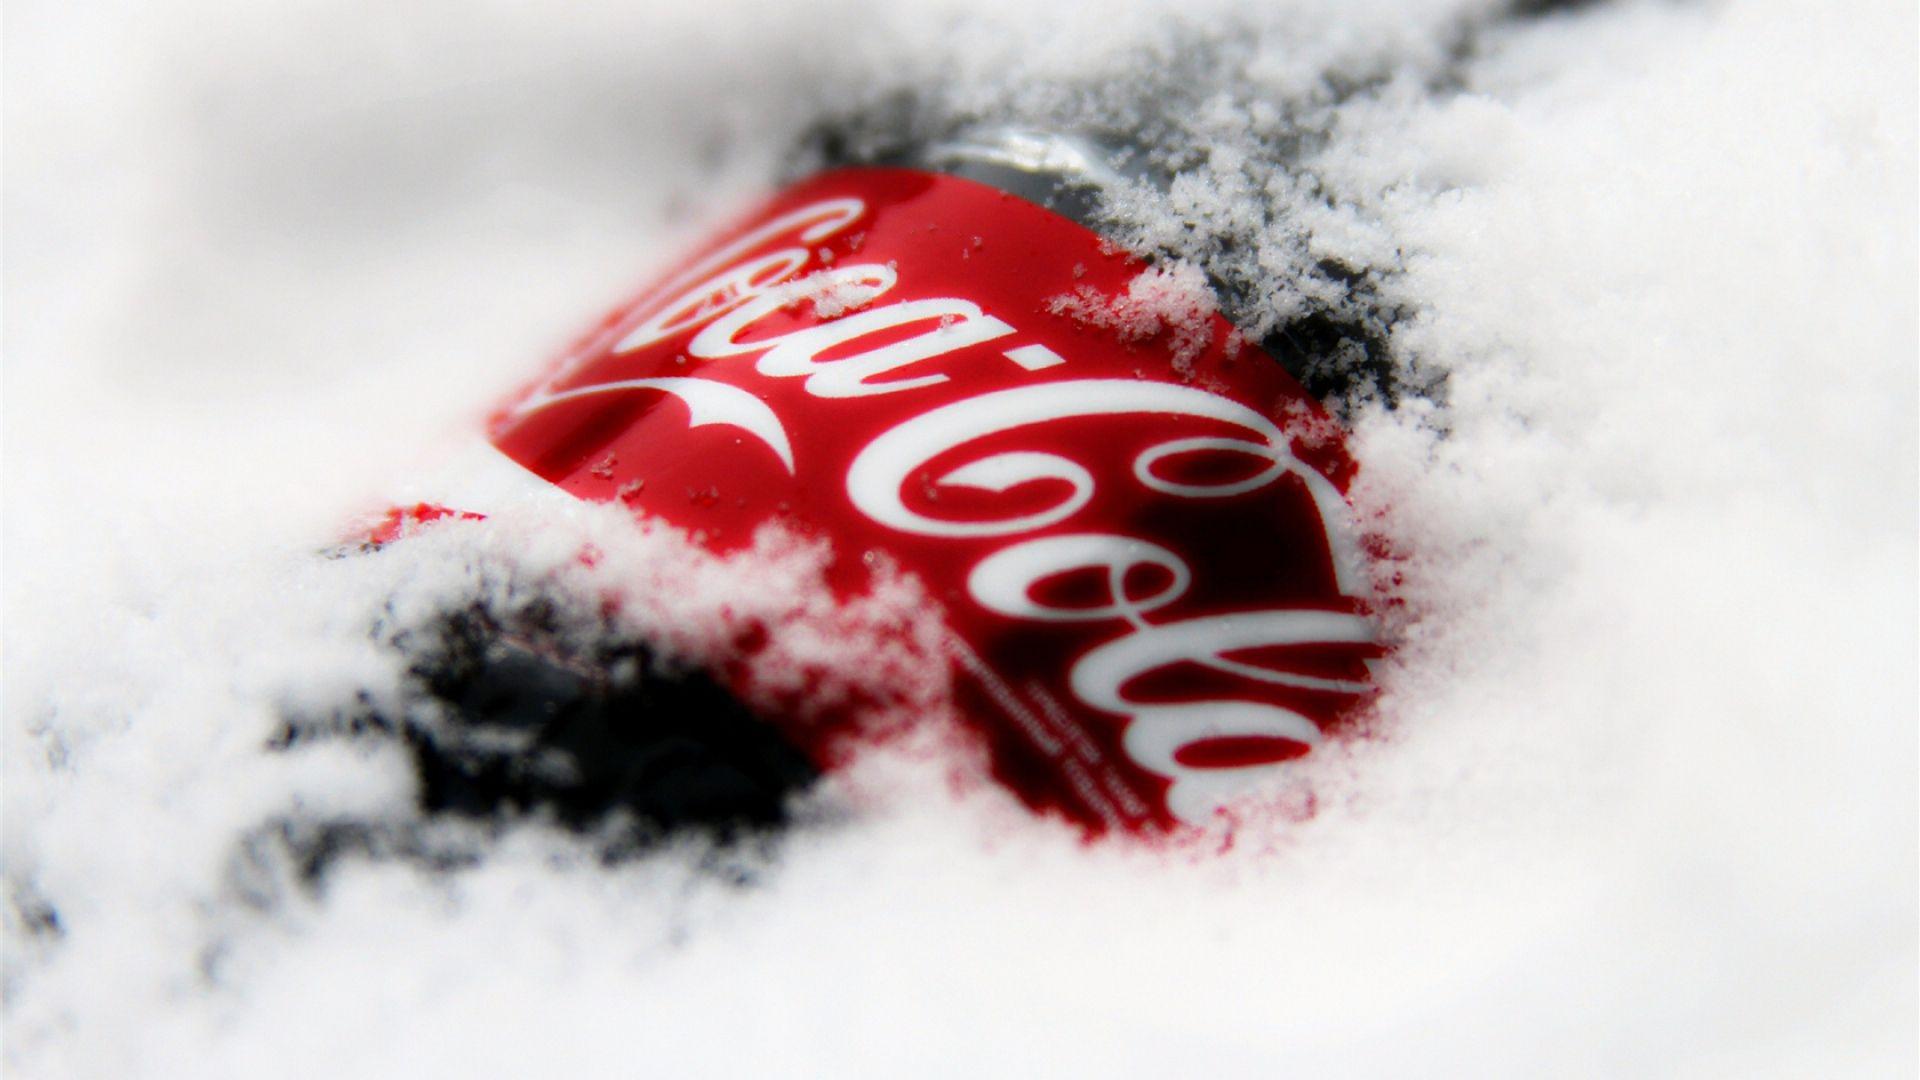 Cocacola Có Thể Bị Cô Lập Trên Nền Trắng Hình ảnh Sẵn có  Tải xuống Hình  ảnh Ngay bây giờ  Cảnh cận Cắt ra Không có người  Số người  iStock